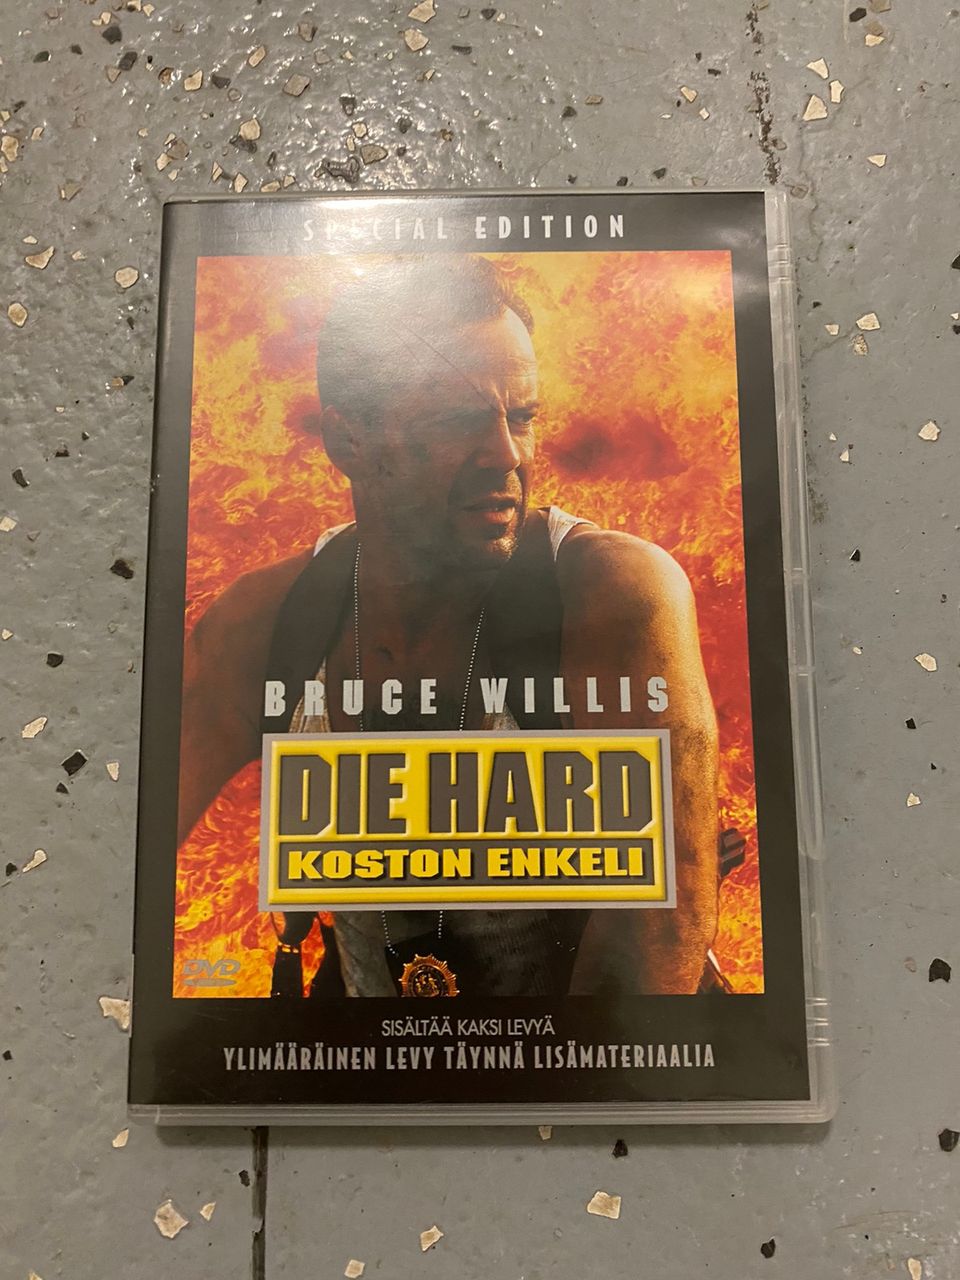 Die hard koston enkeli dvd